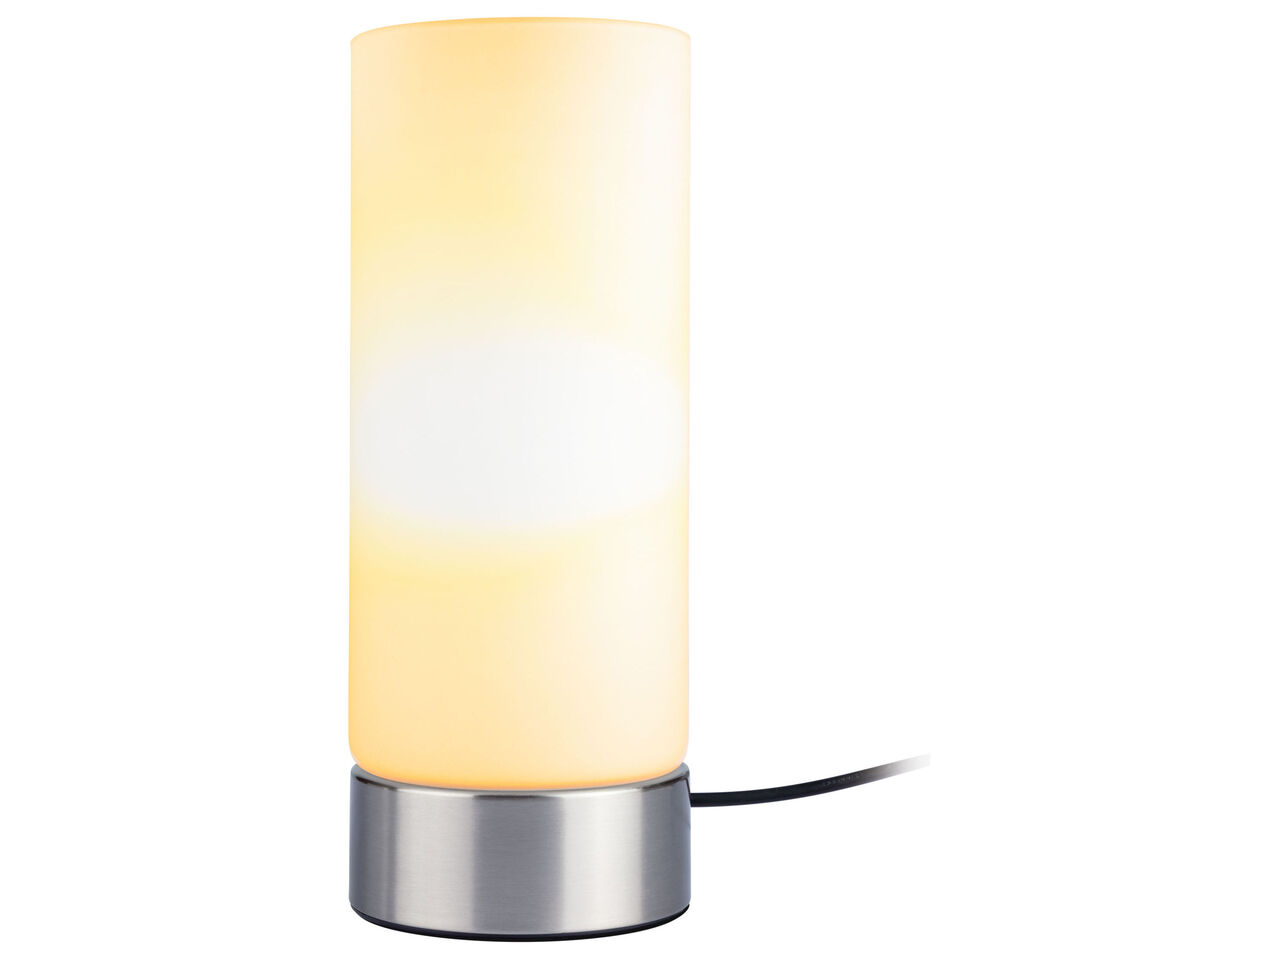 LIVARNO HOME® Lampa stołowa z funkcją przyciemniania , cena 39,99 PLN 

- 10 ...